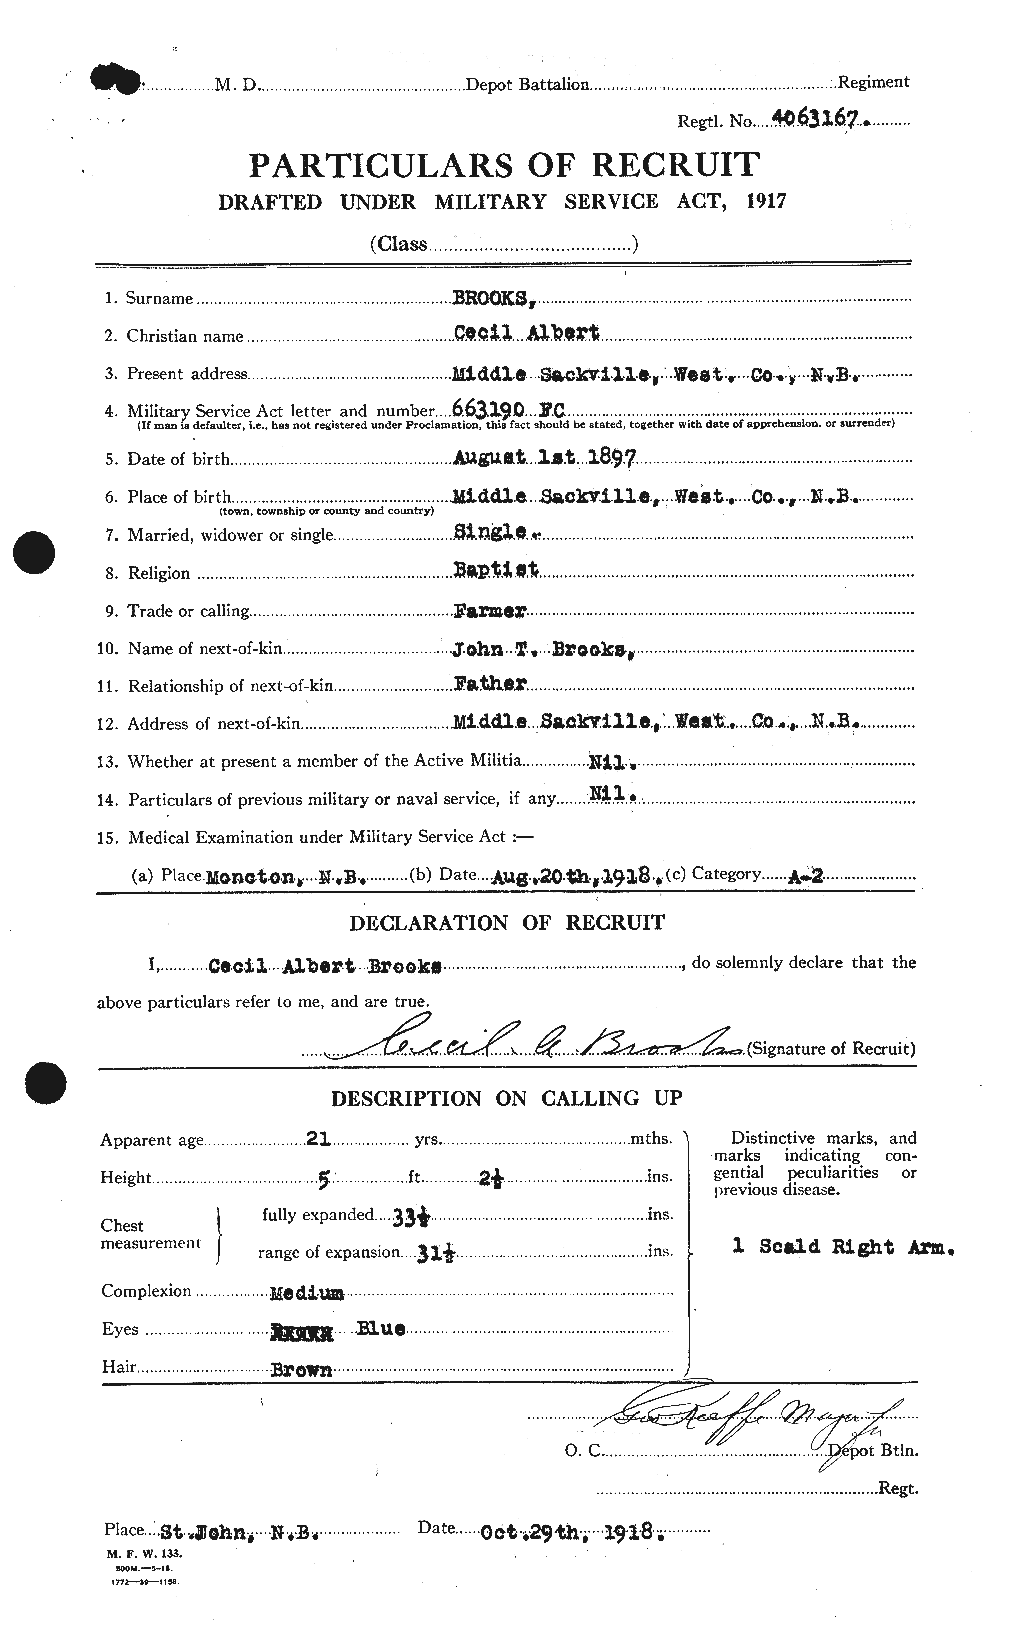 Dossiers du Personnel de la Première Guerre mondiale - CEC 261511a